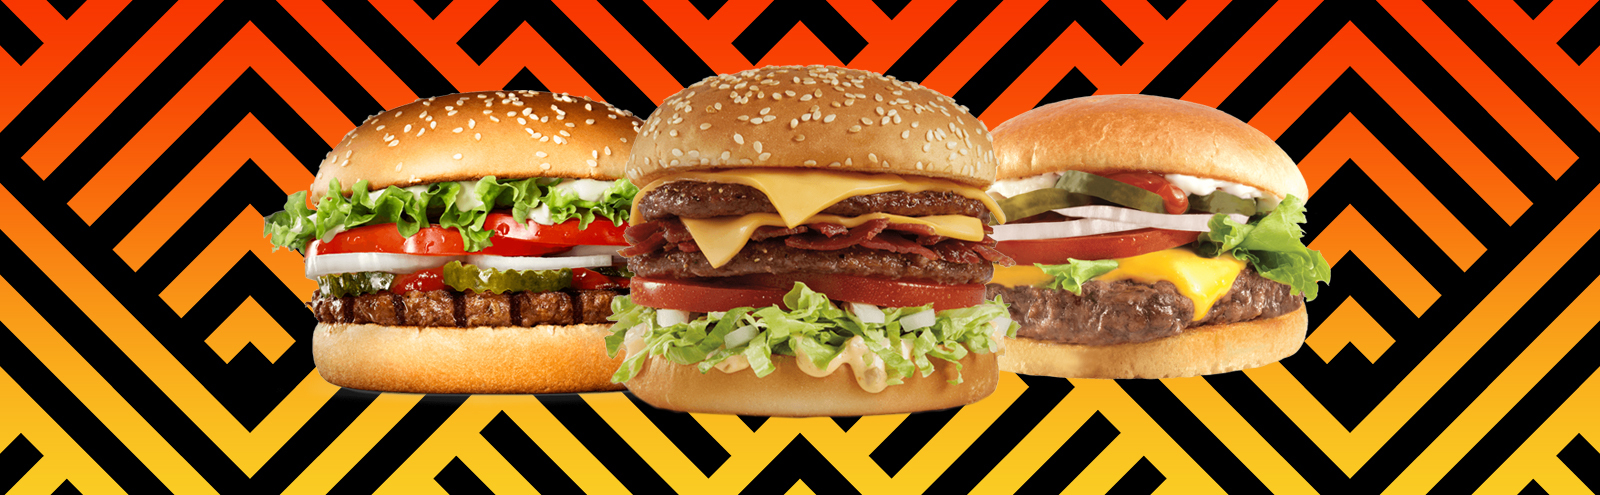 burgers-tf-uproxx.jpg